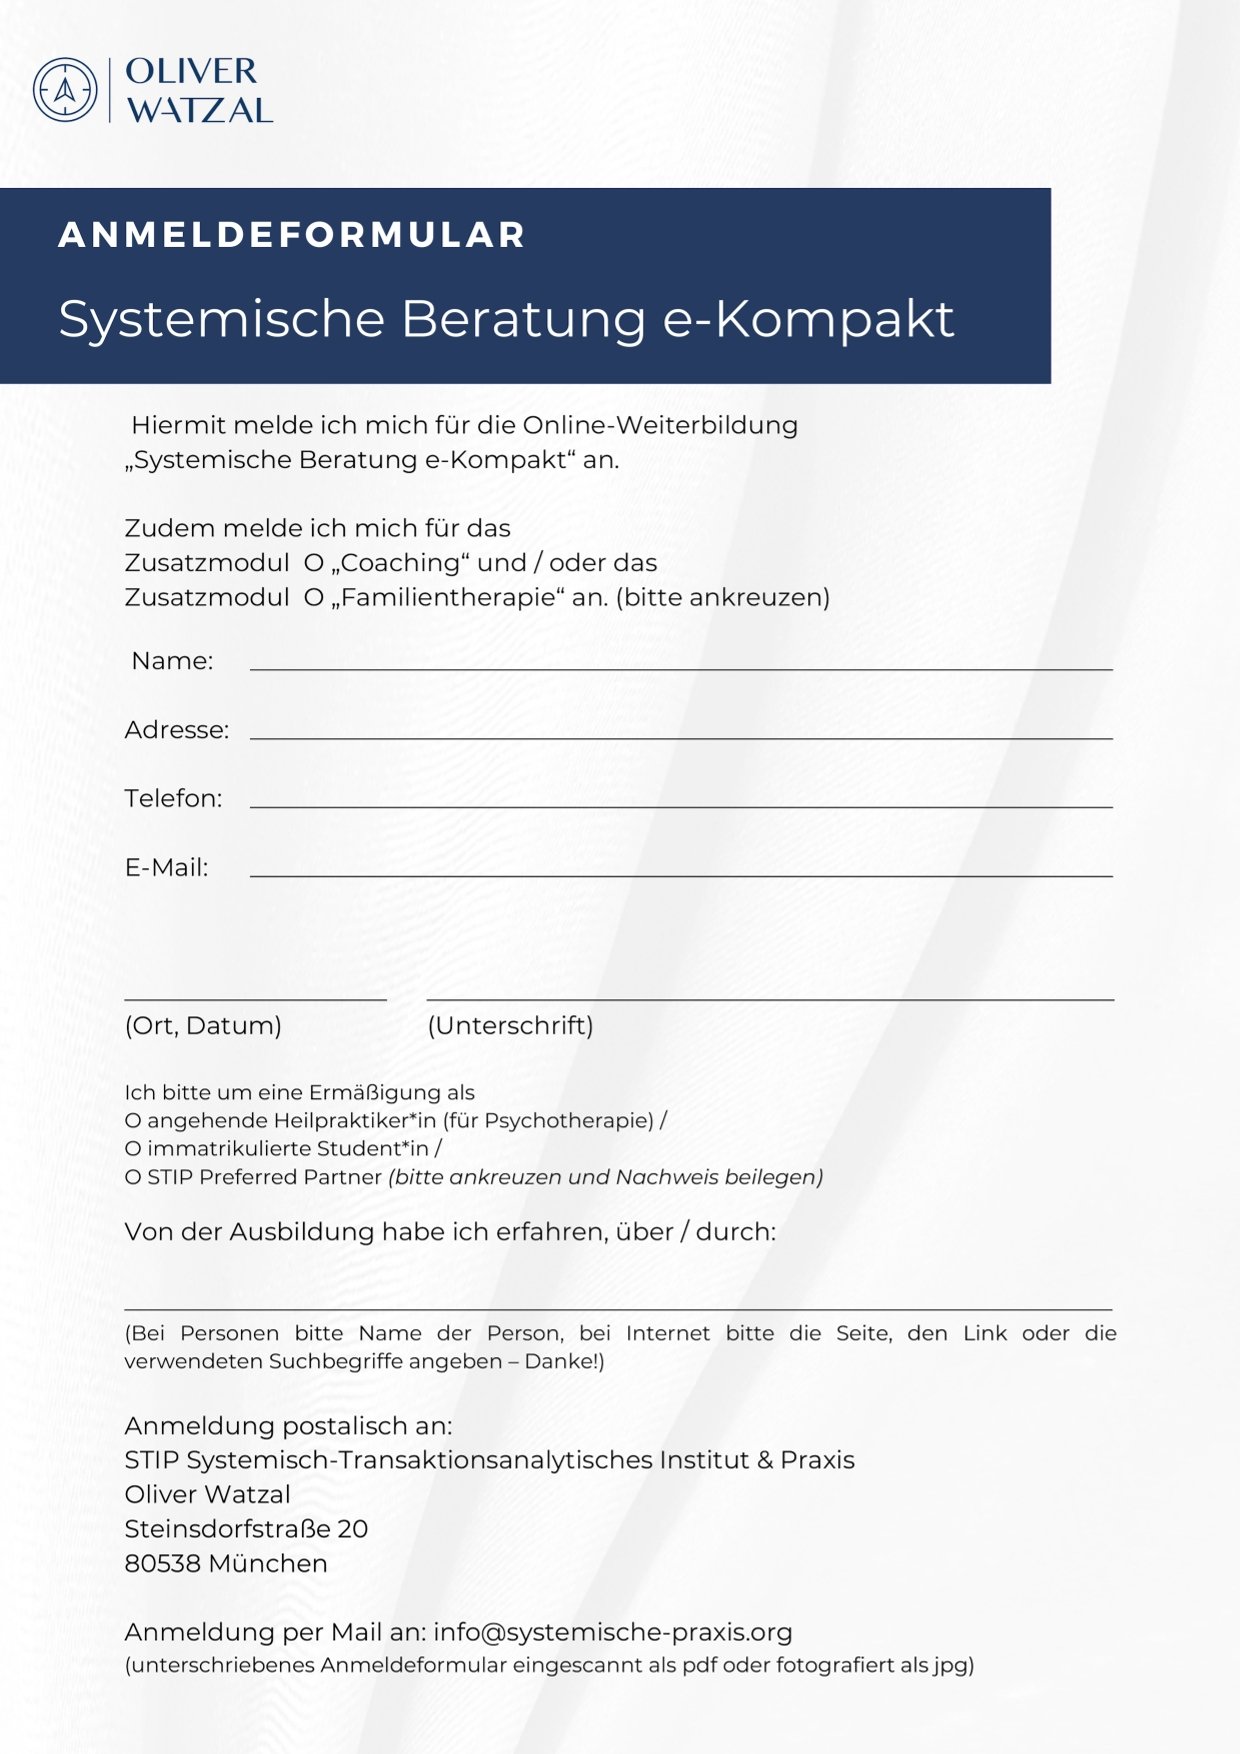 Online Weiterbildung Systemische Beratung e-Kompakt - Ausschreibung mit Anmeldeformular 4.jpg